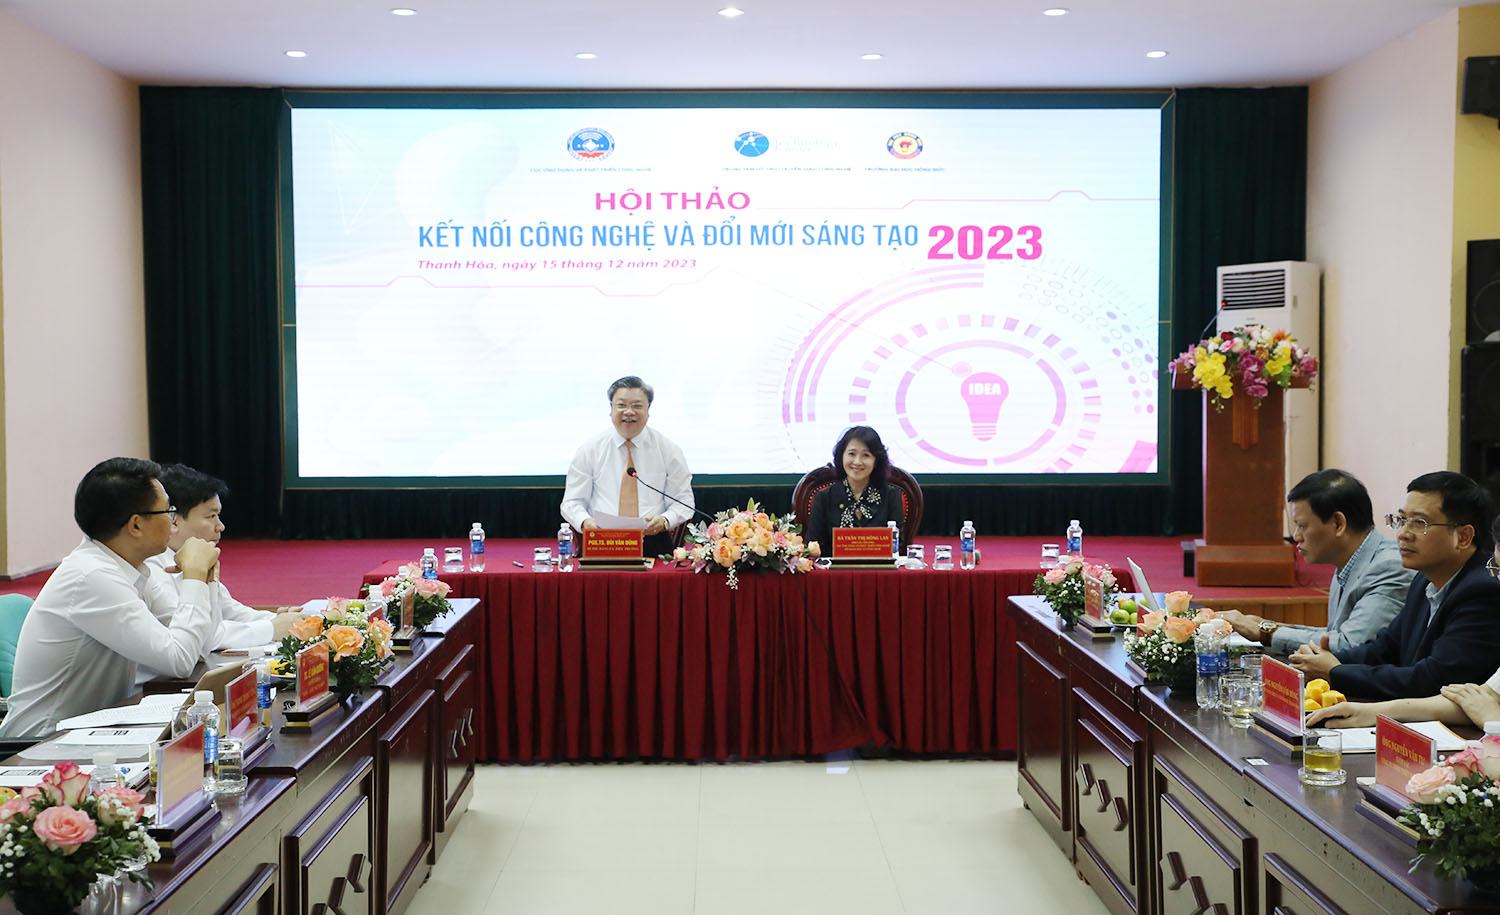 Hội thảo “Kết nối công nghệ và đổi mới sáng tạo” năm 2023